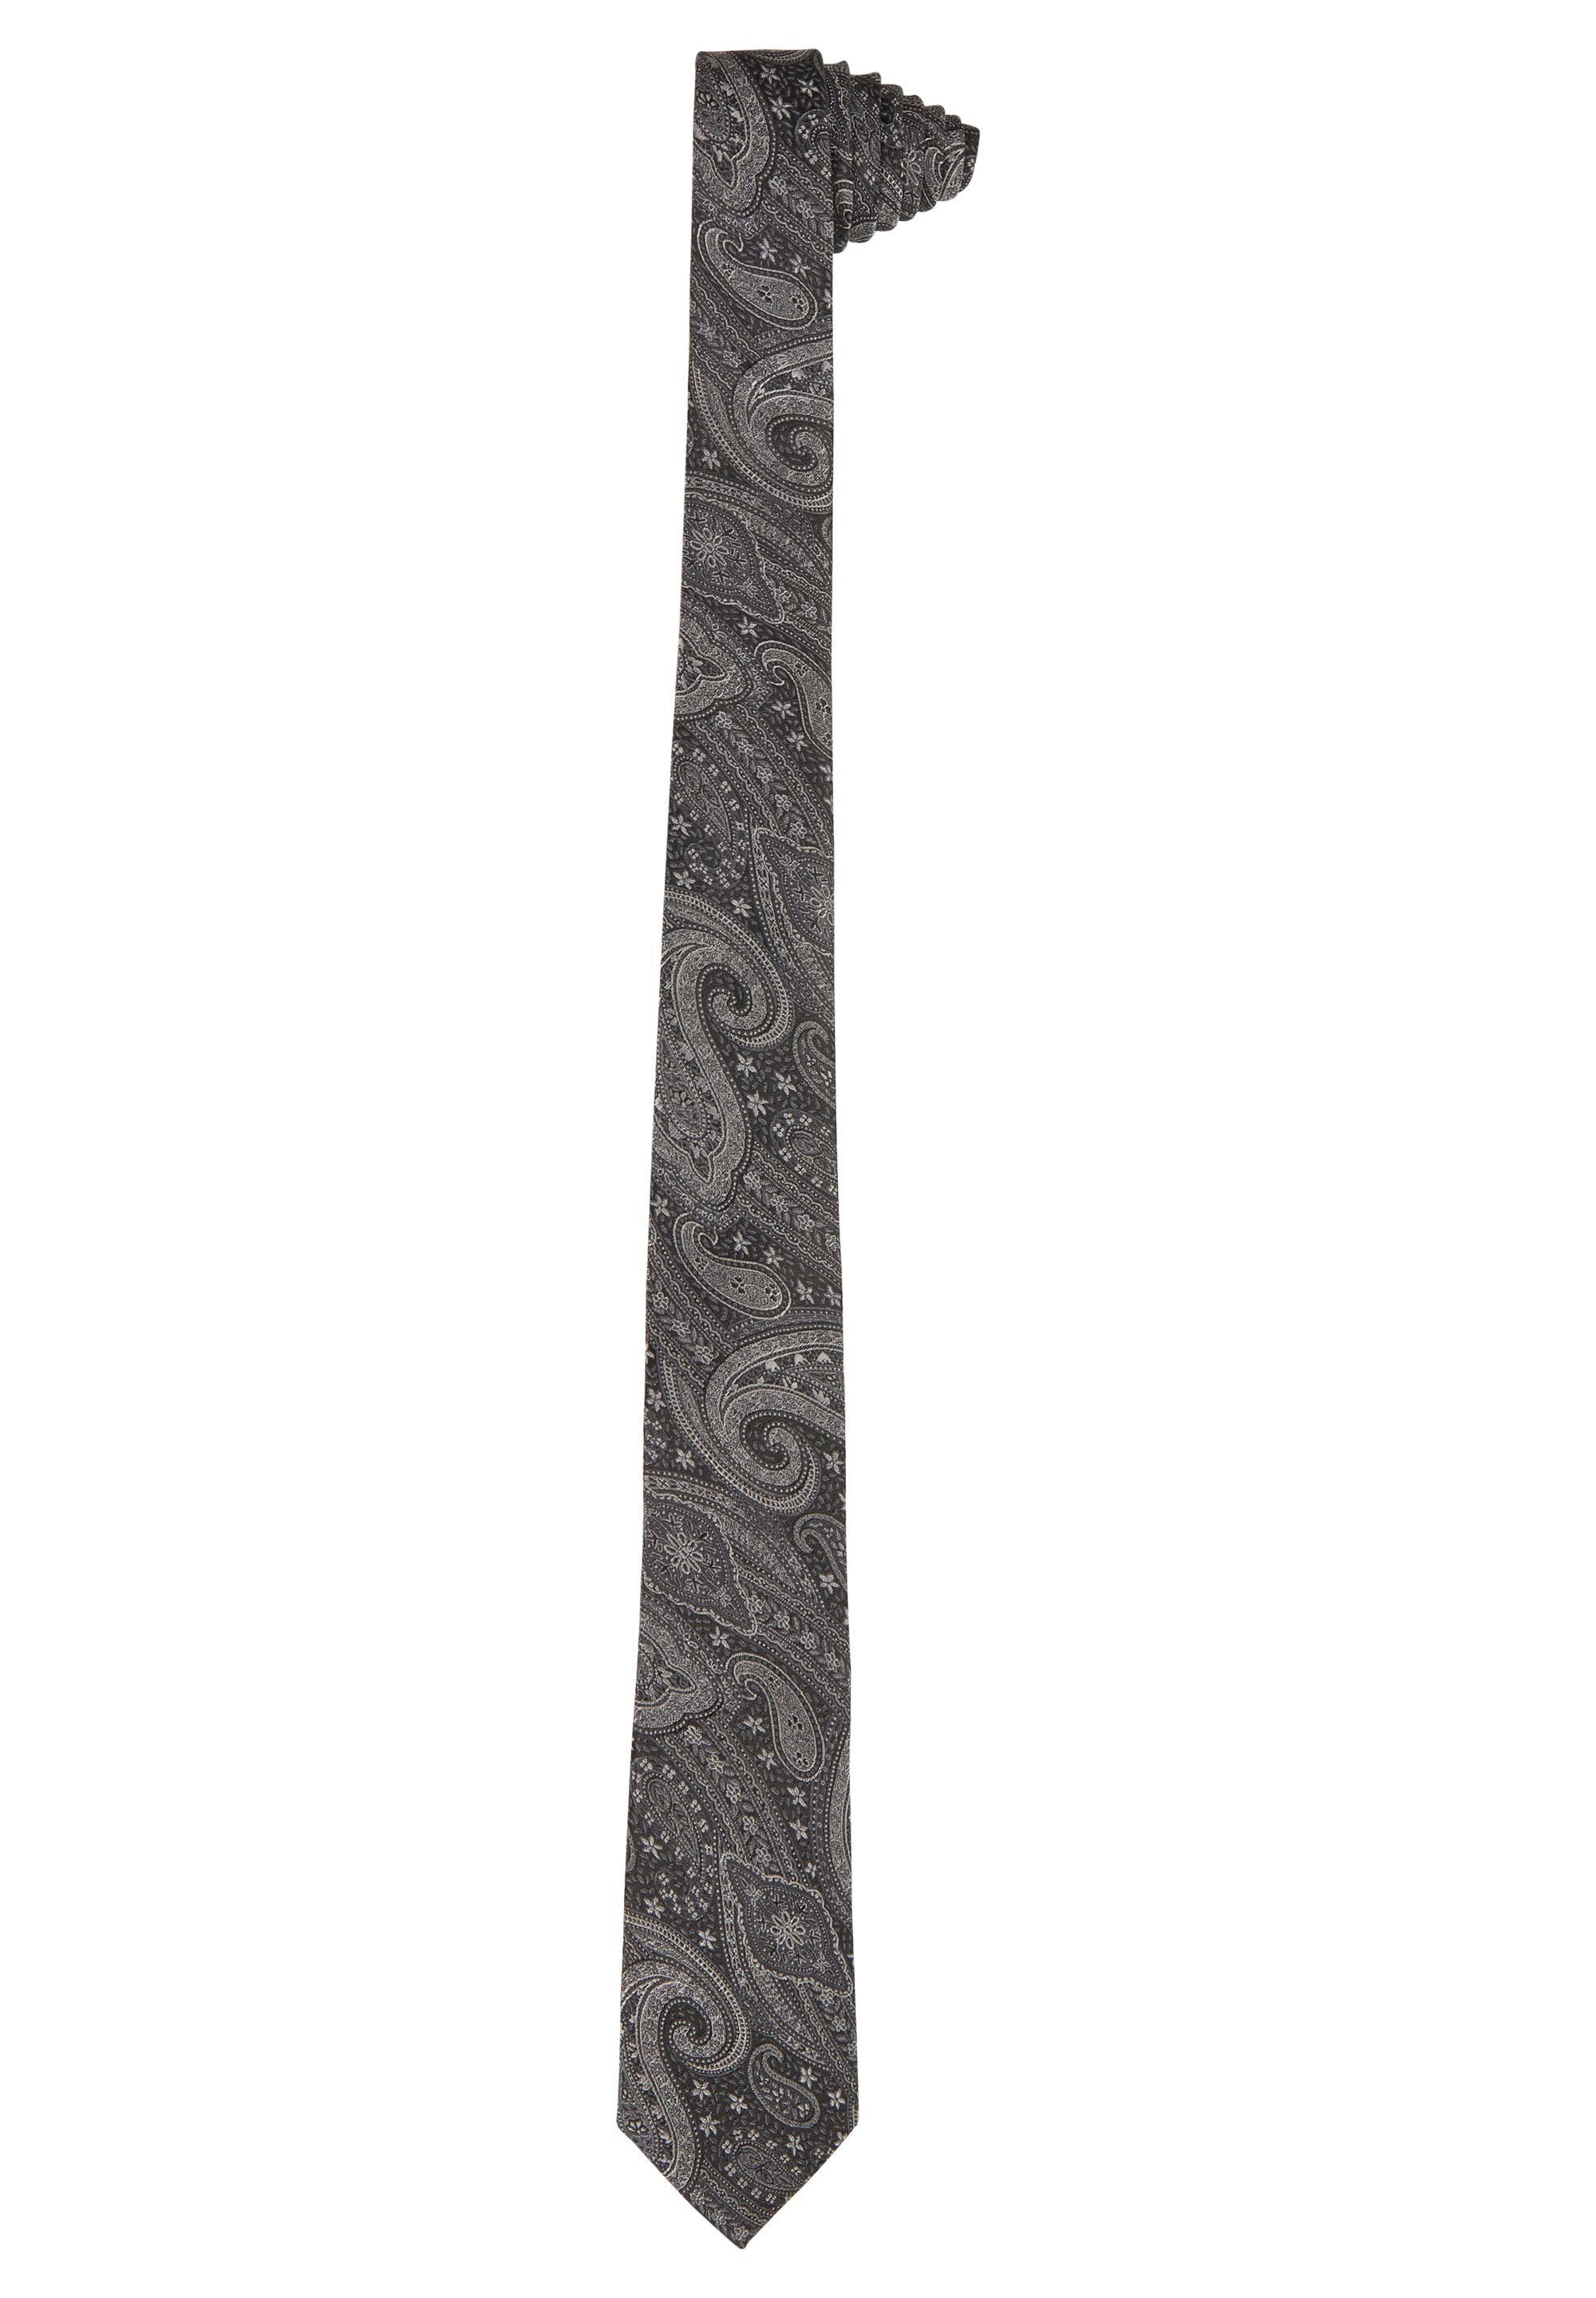 brandneu authentisch HECHTER PARIS Krawatte mit graphite Paisley-Muster